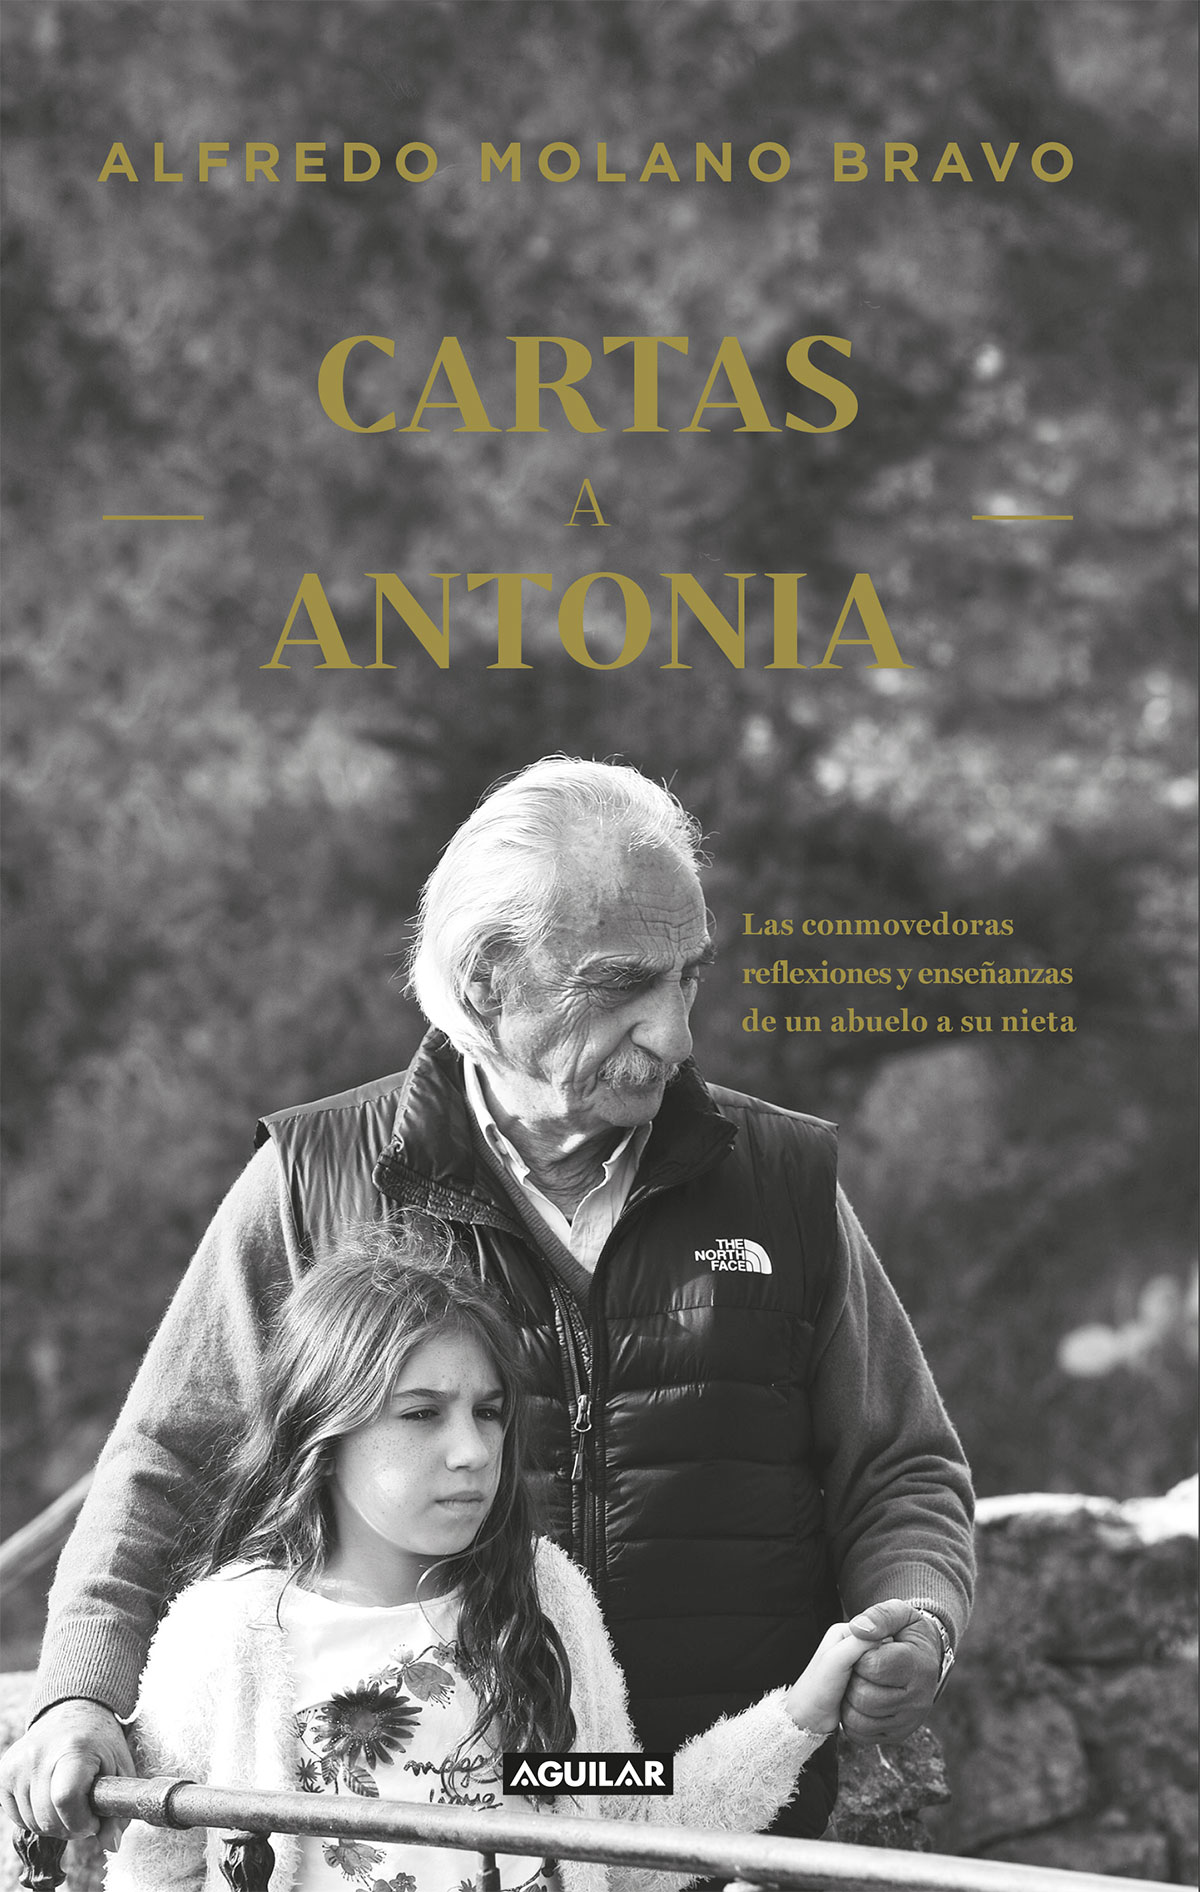 Cartas a Antonia Las conmovedoras reflexiones y enseñanzas de un abuelo a su nieta - image 1